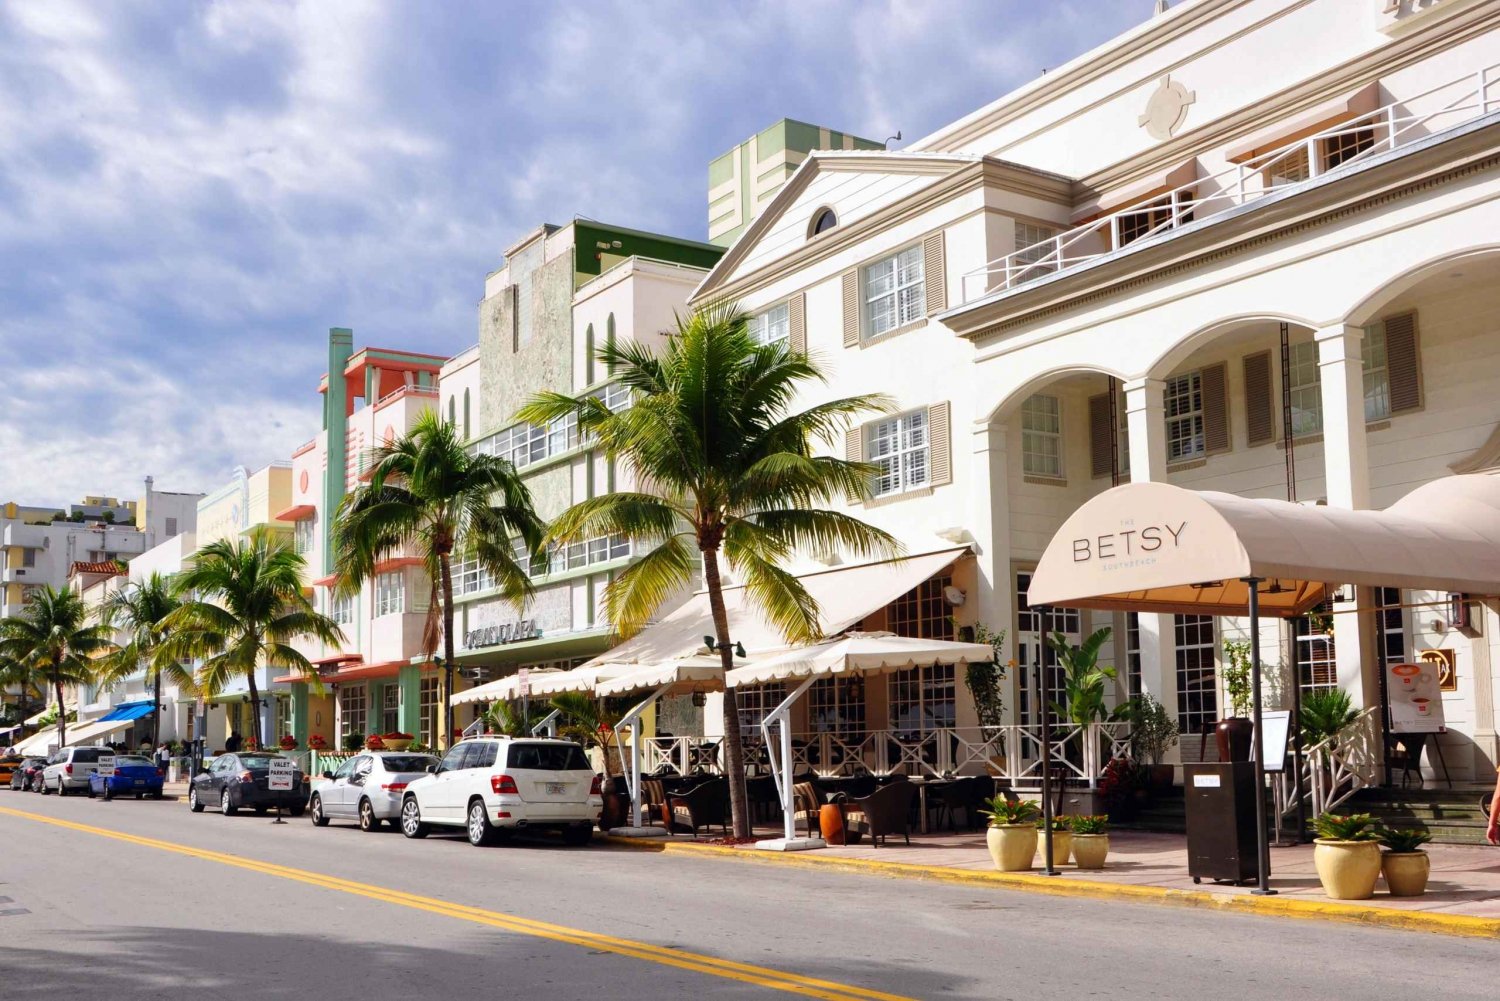 Miami - najważniejsze atrakcje w stylu Art Deco i zwiedzanie muzeum Wolfsonian